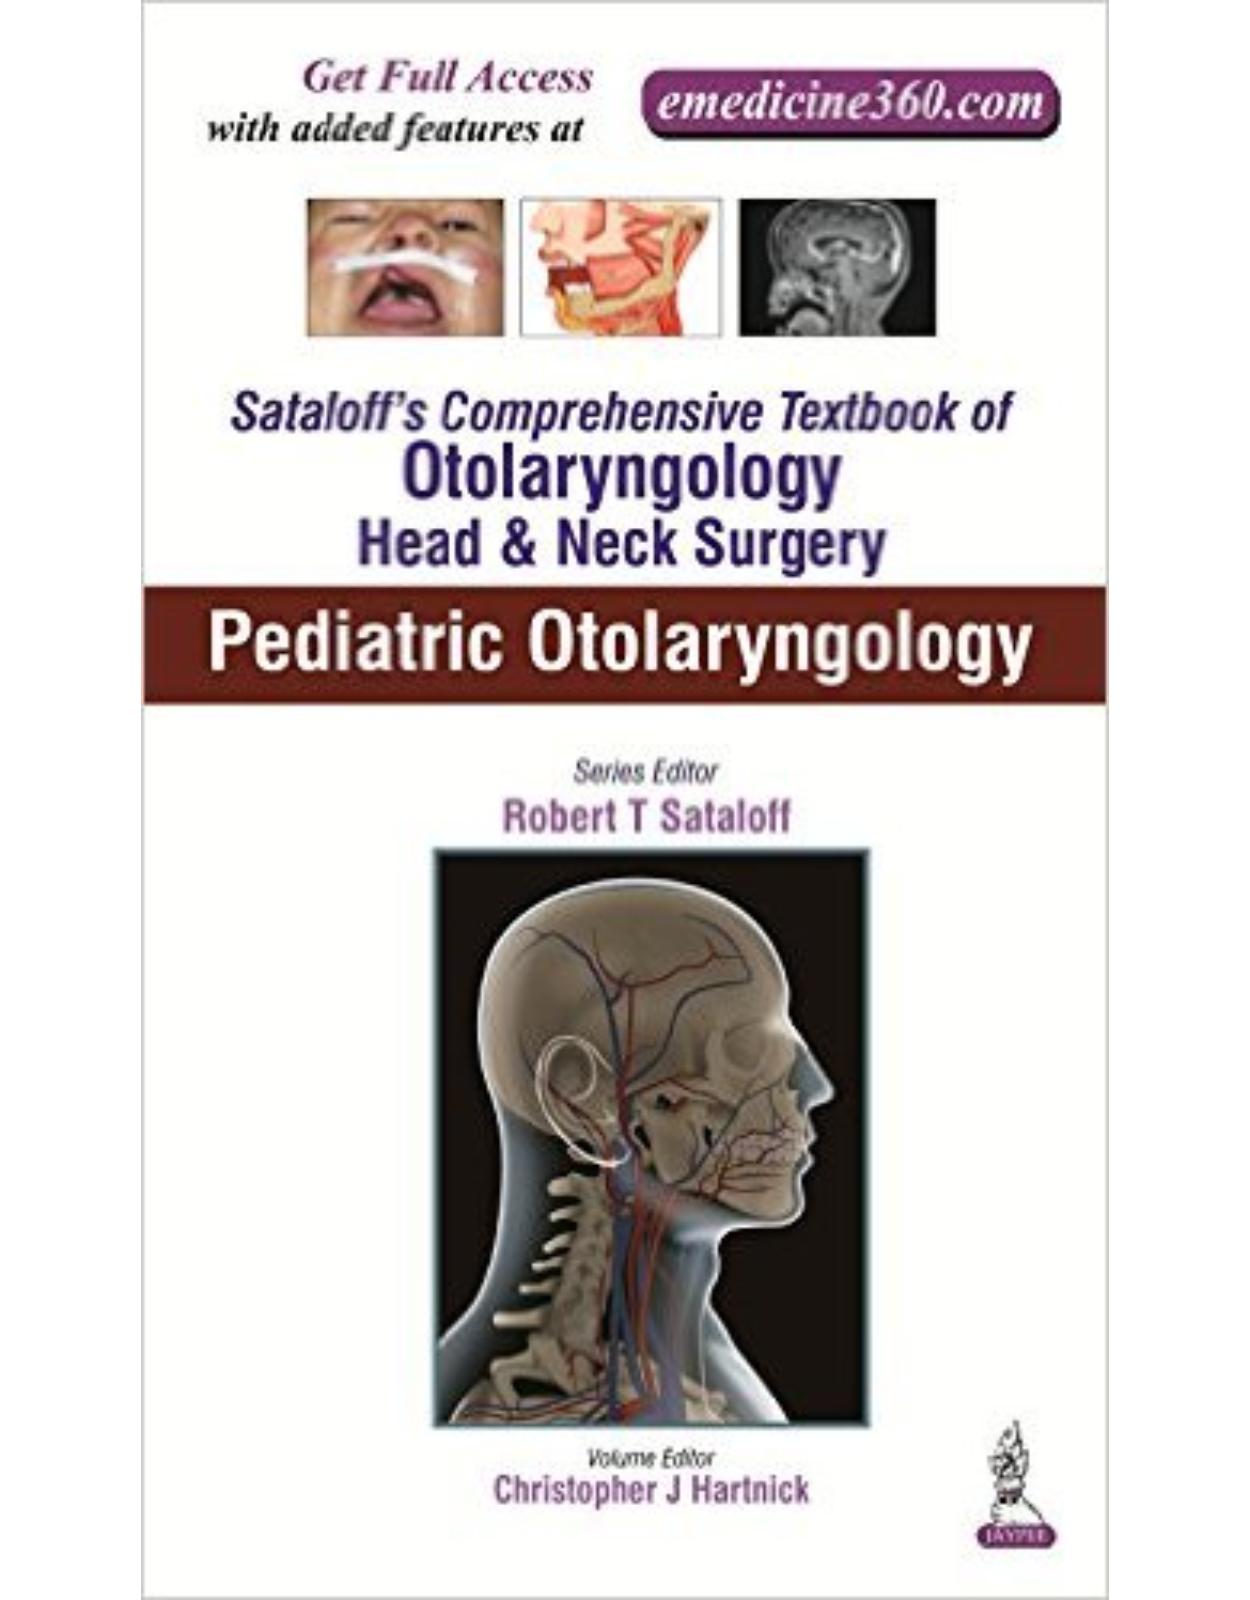 Sataloff's Comprehensive Textbook of Otolaryngology: Head & Neck Surgery: Pediatric Otolaryngology: 6 